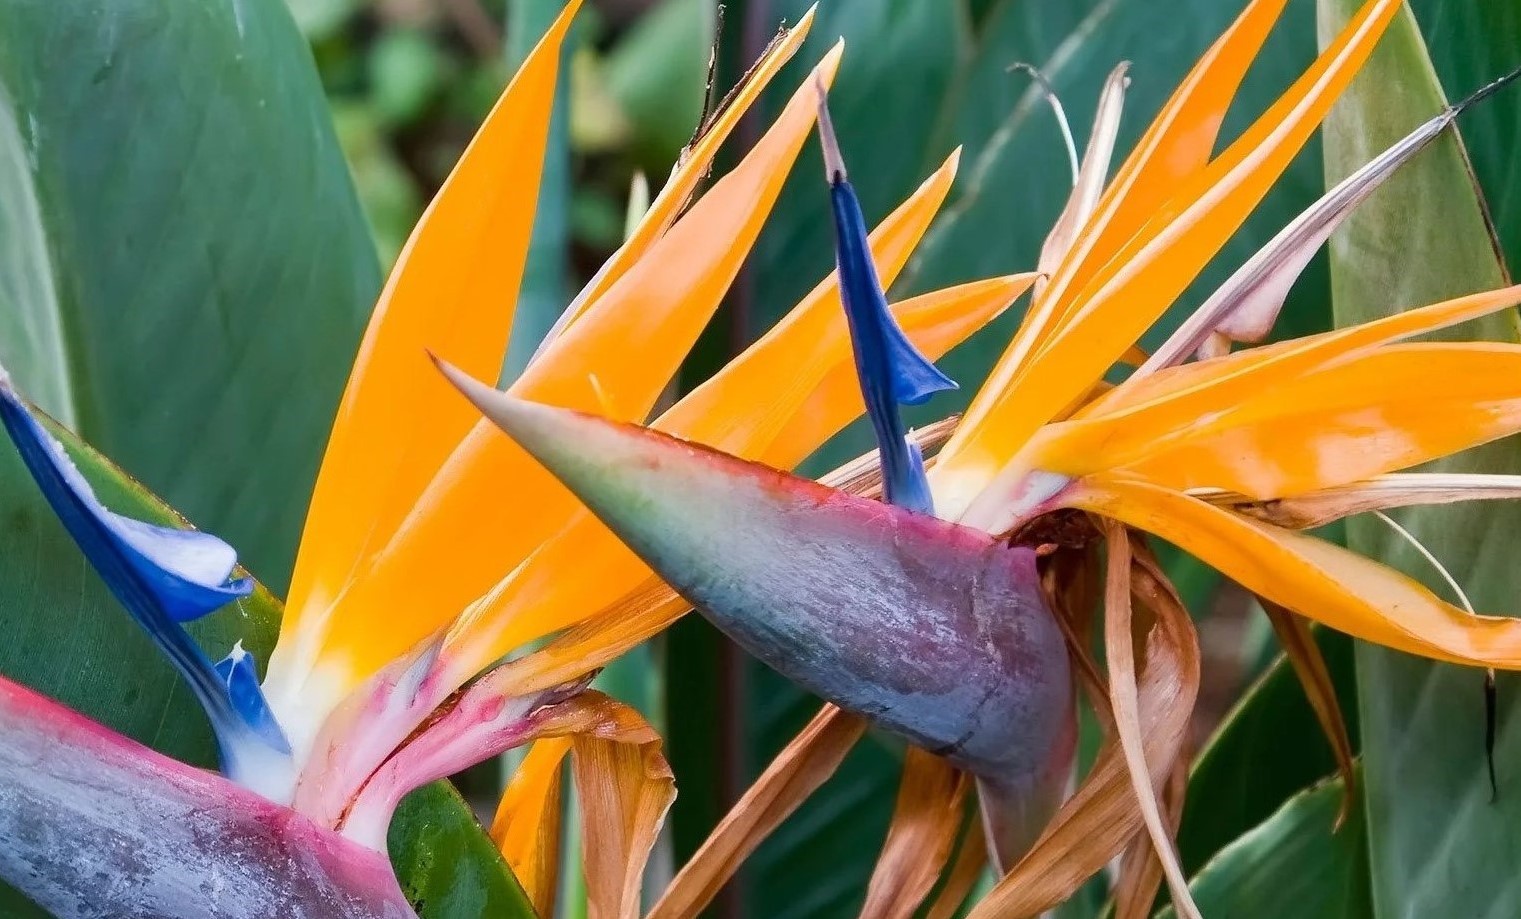 birds of paradise plant species